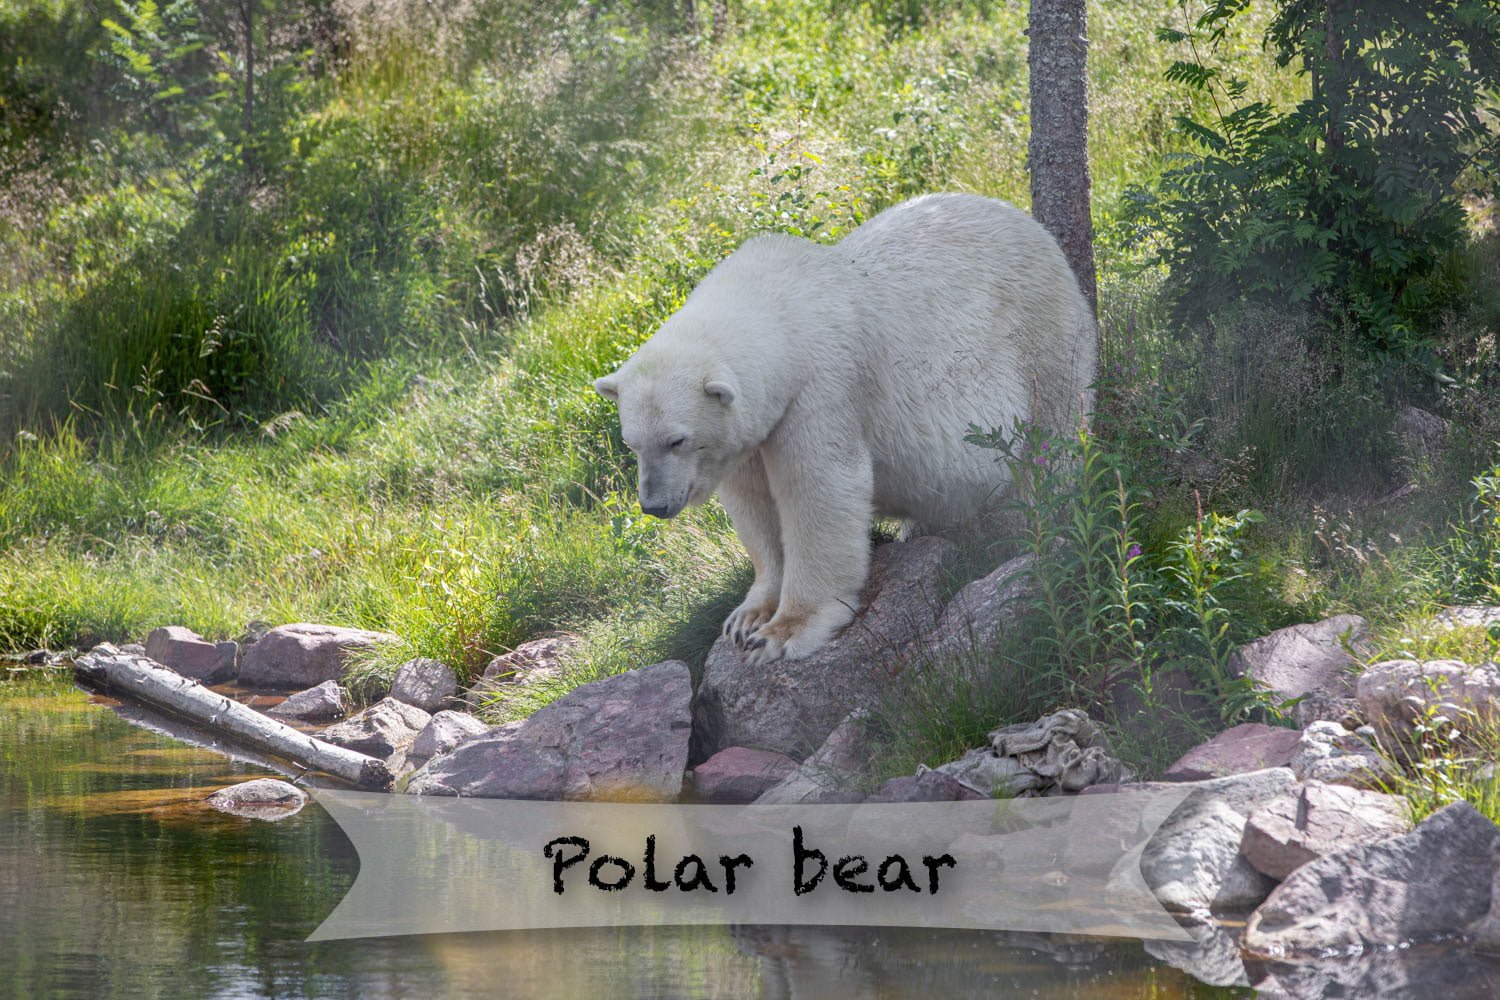 Orsa rovdjurspark - Polar bear